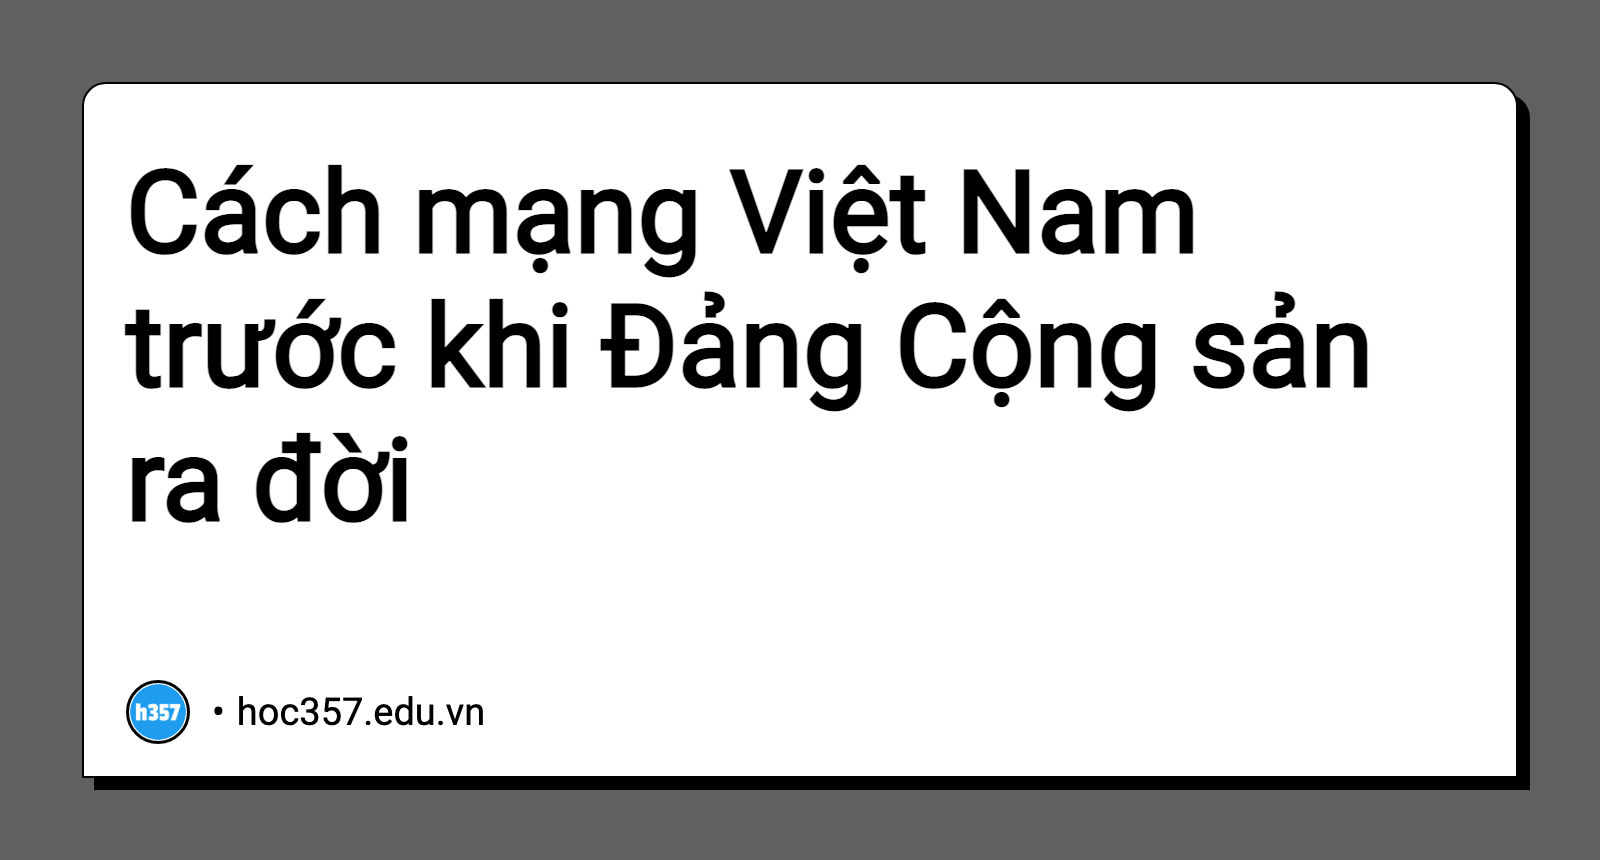 Hình minh họa Cách mạng Việt Nam trước khi Đảng Cộng sản ra đời